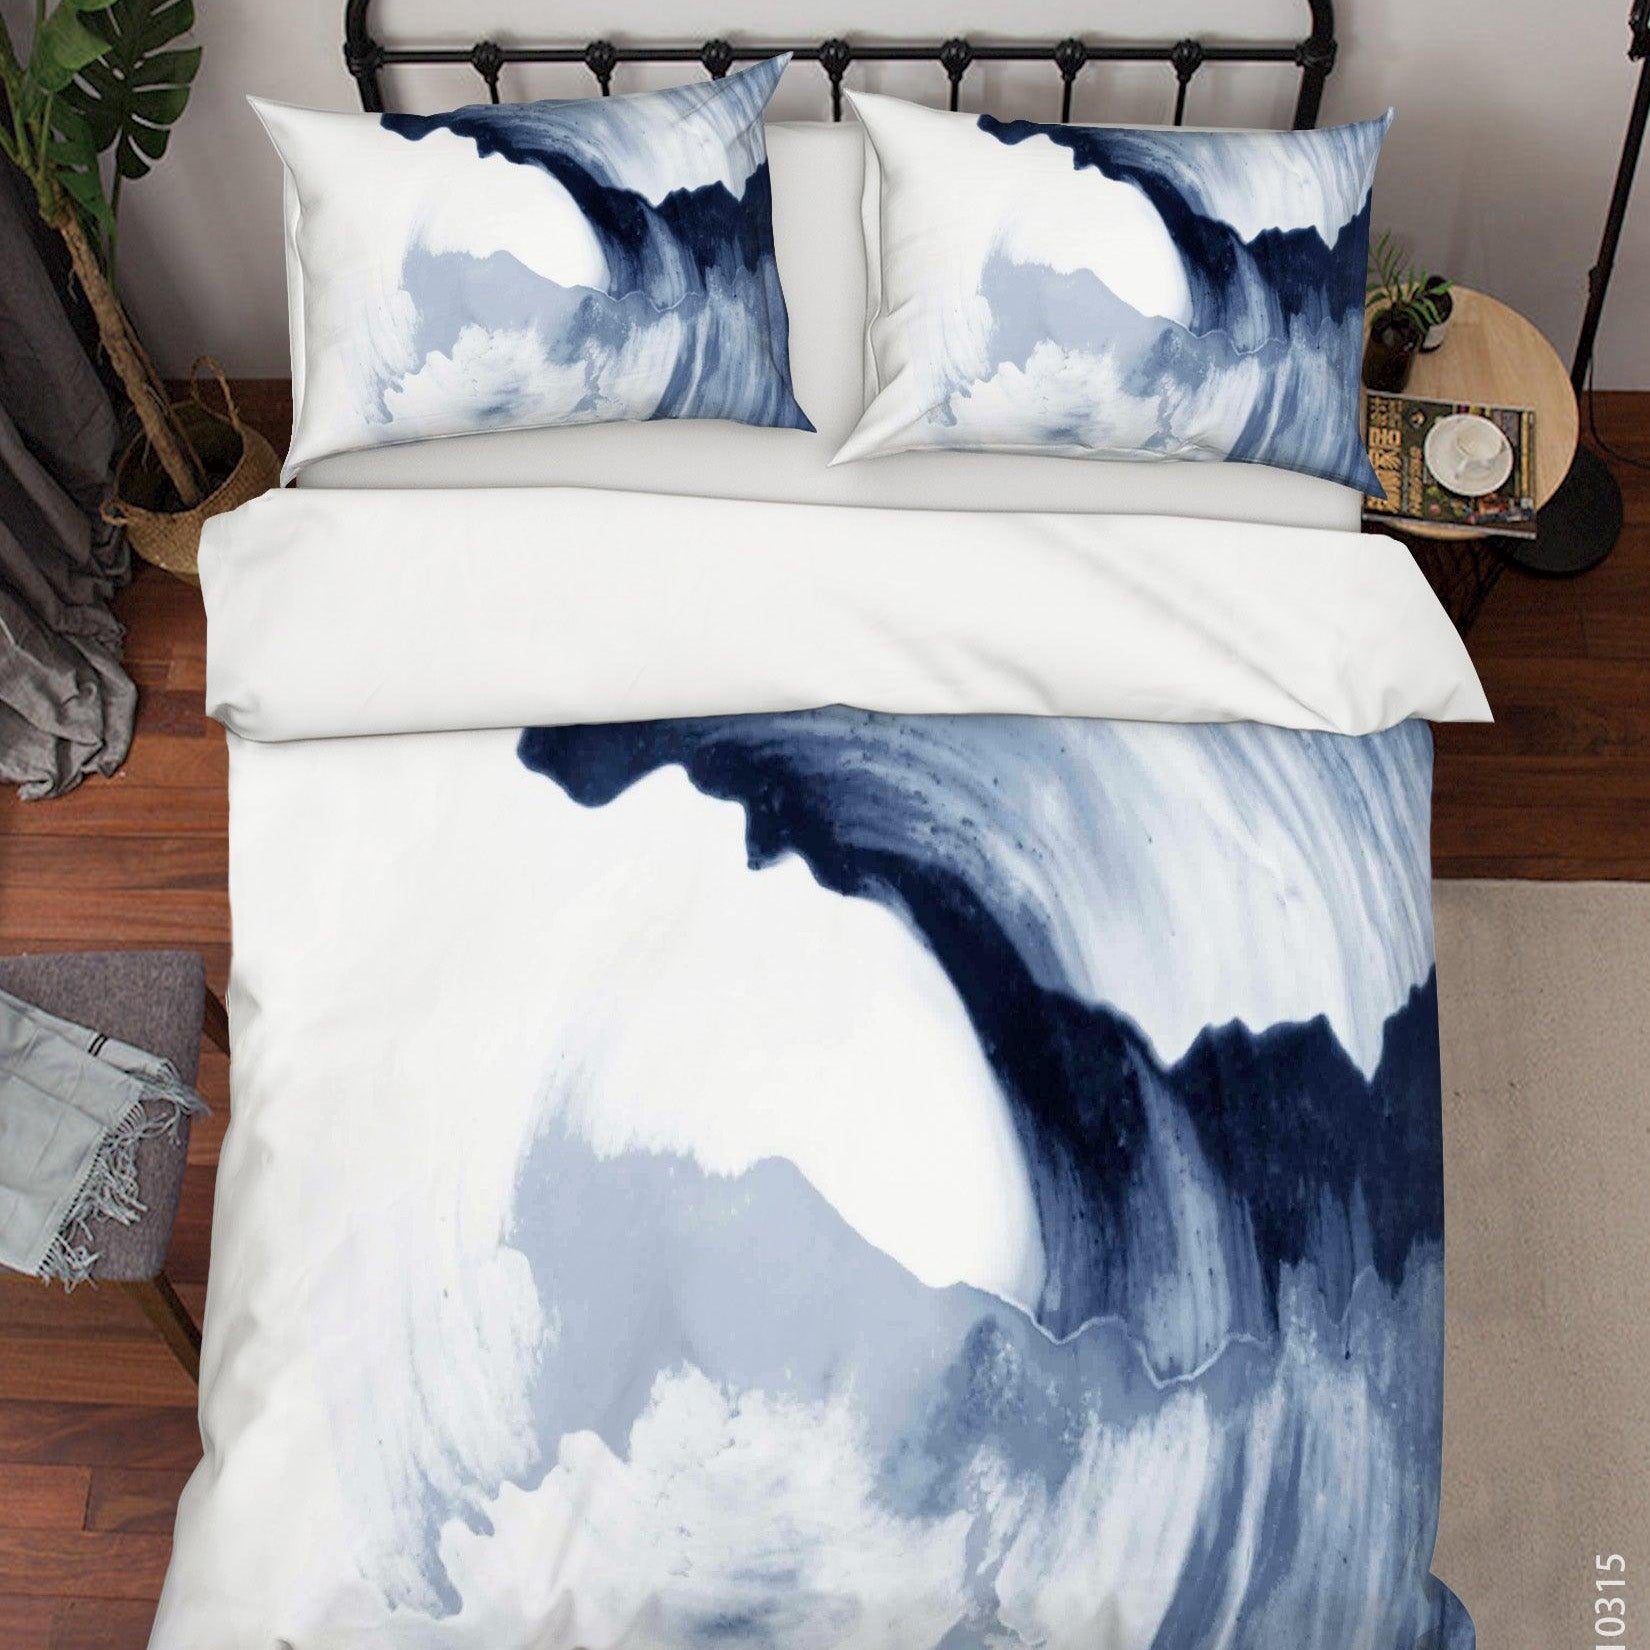 3D Watercolor Ink Painting Quilt Cover Set Bedding Set Duvet Cover Pillowcases 132- Jess Art Decoration